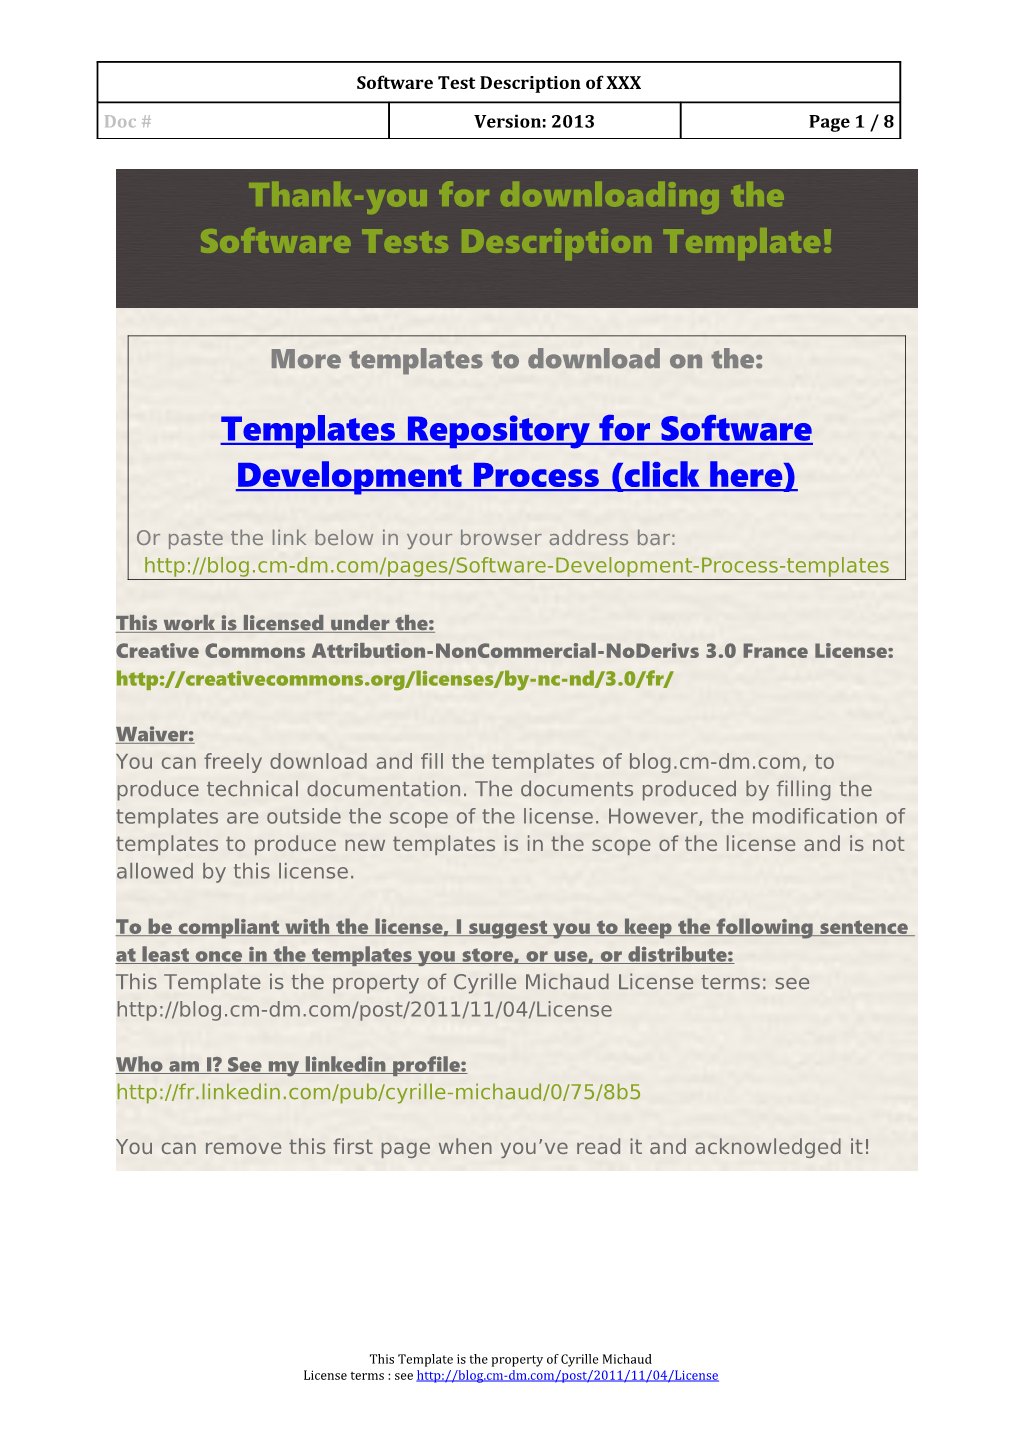 Software Tests Description Template